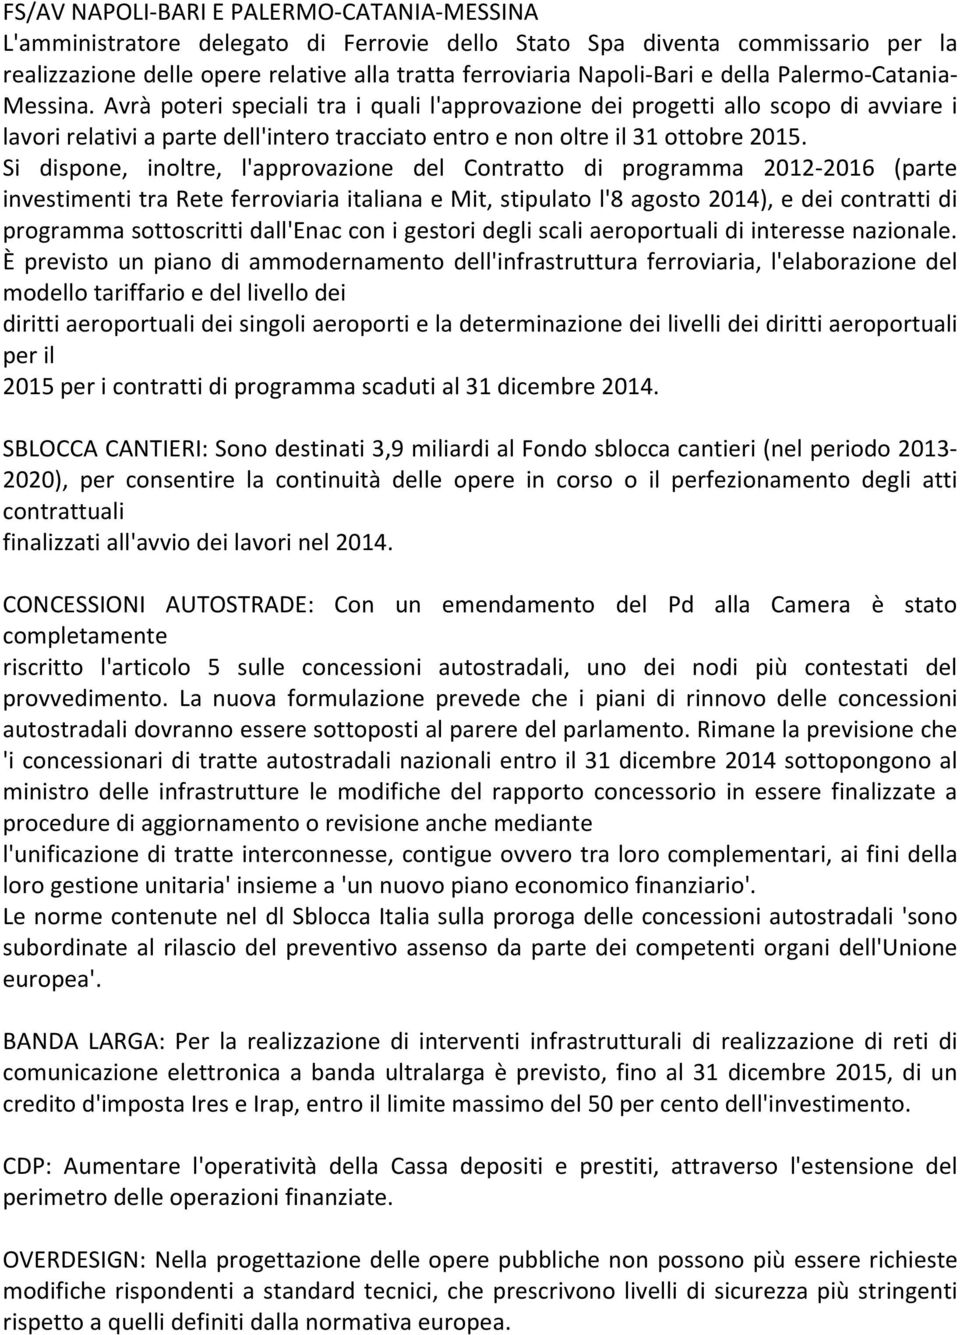 Si dispone, inoltre, l'approvazione del Contratto di programma 2012-2016 (parte investimenti tra Rete ferroviaria italiana e Mit, stipulato l'8 agosto 2014), e dei contratti di programma sottoscritti